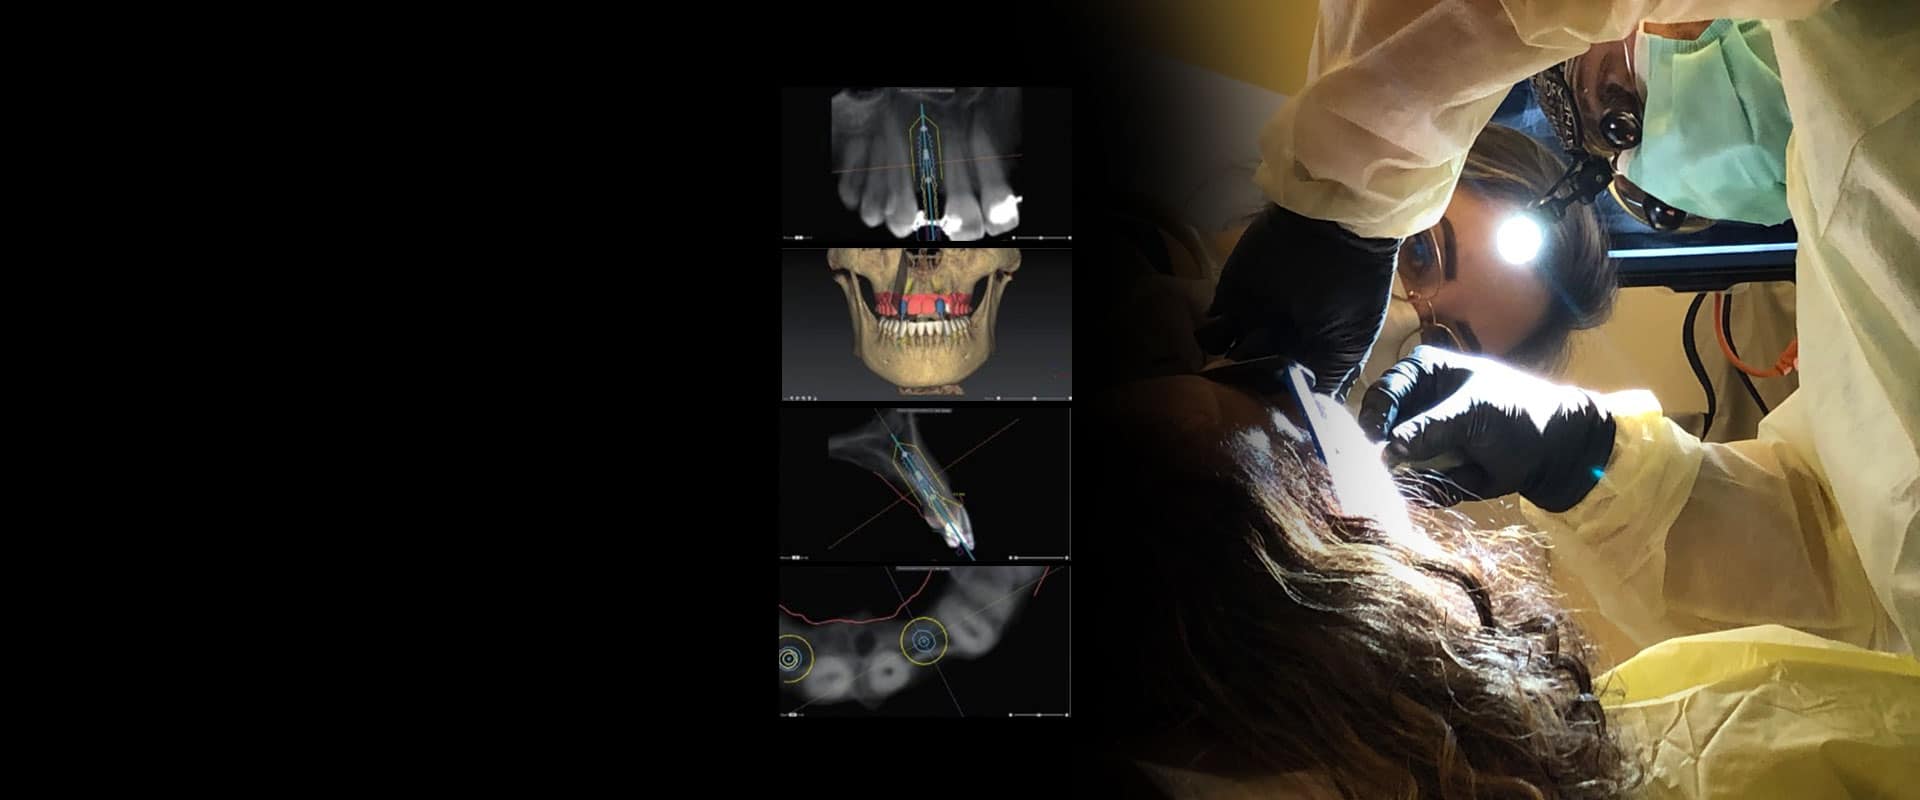 dental-implants-home-slider9